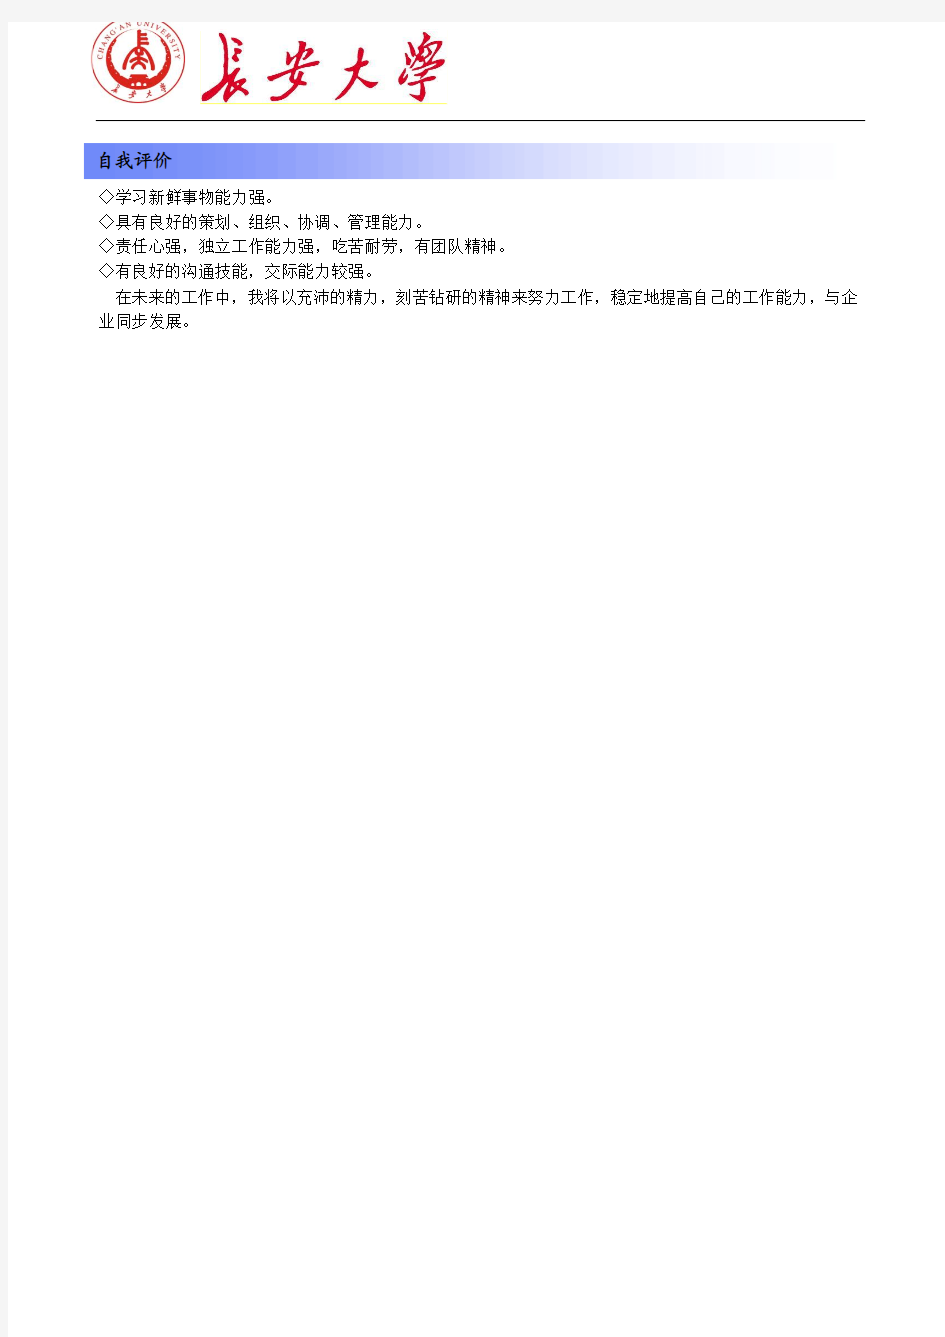 长安大学简历模板(版式1+蓝色标题+logo)